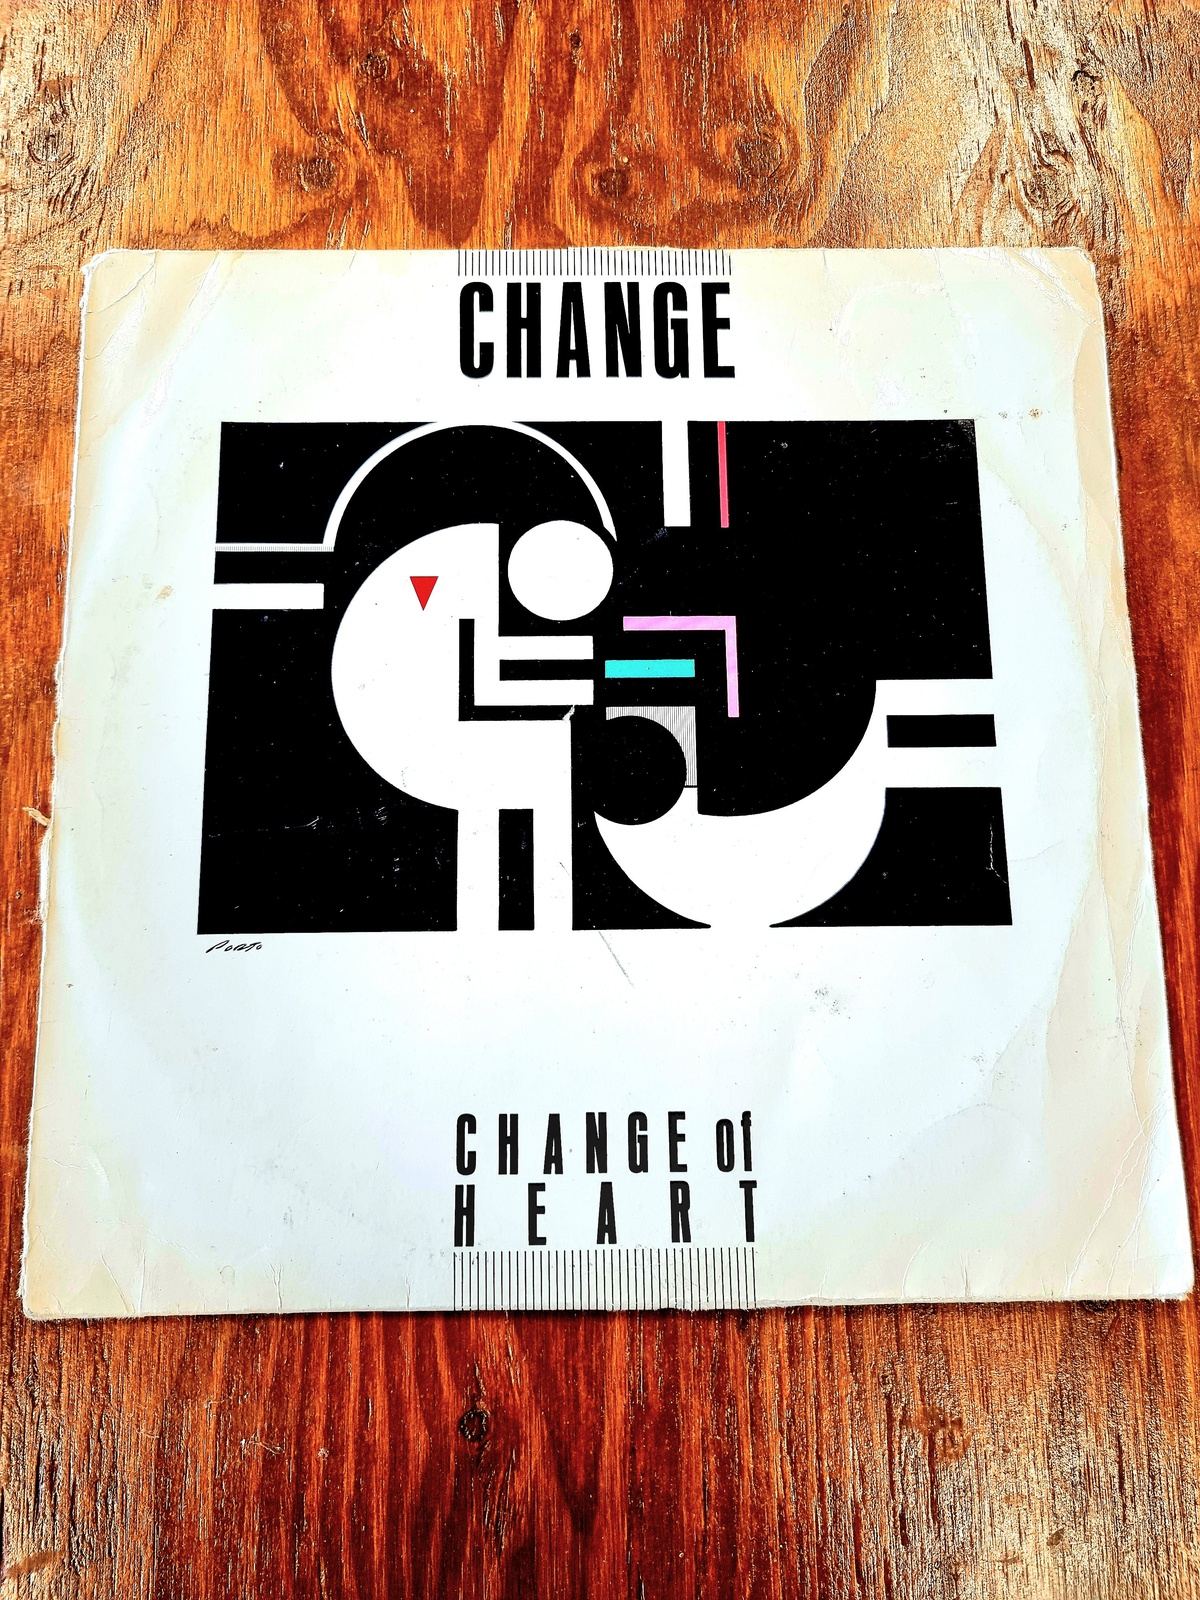 Change – Change Of Heart